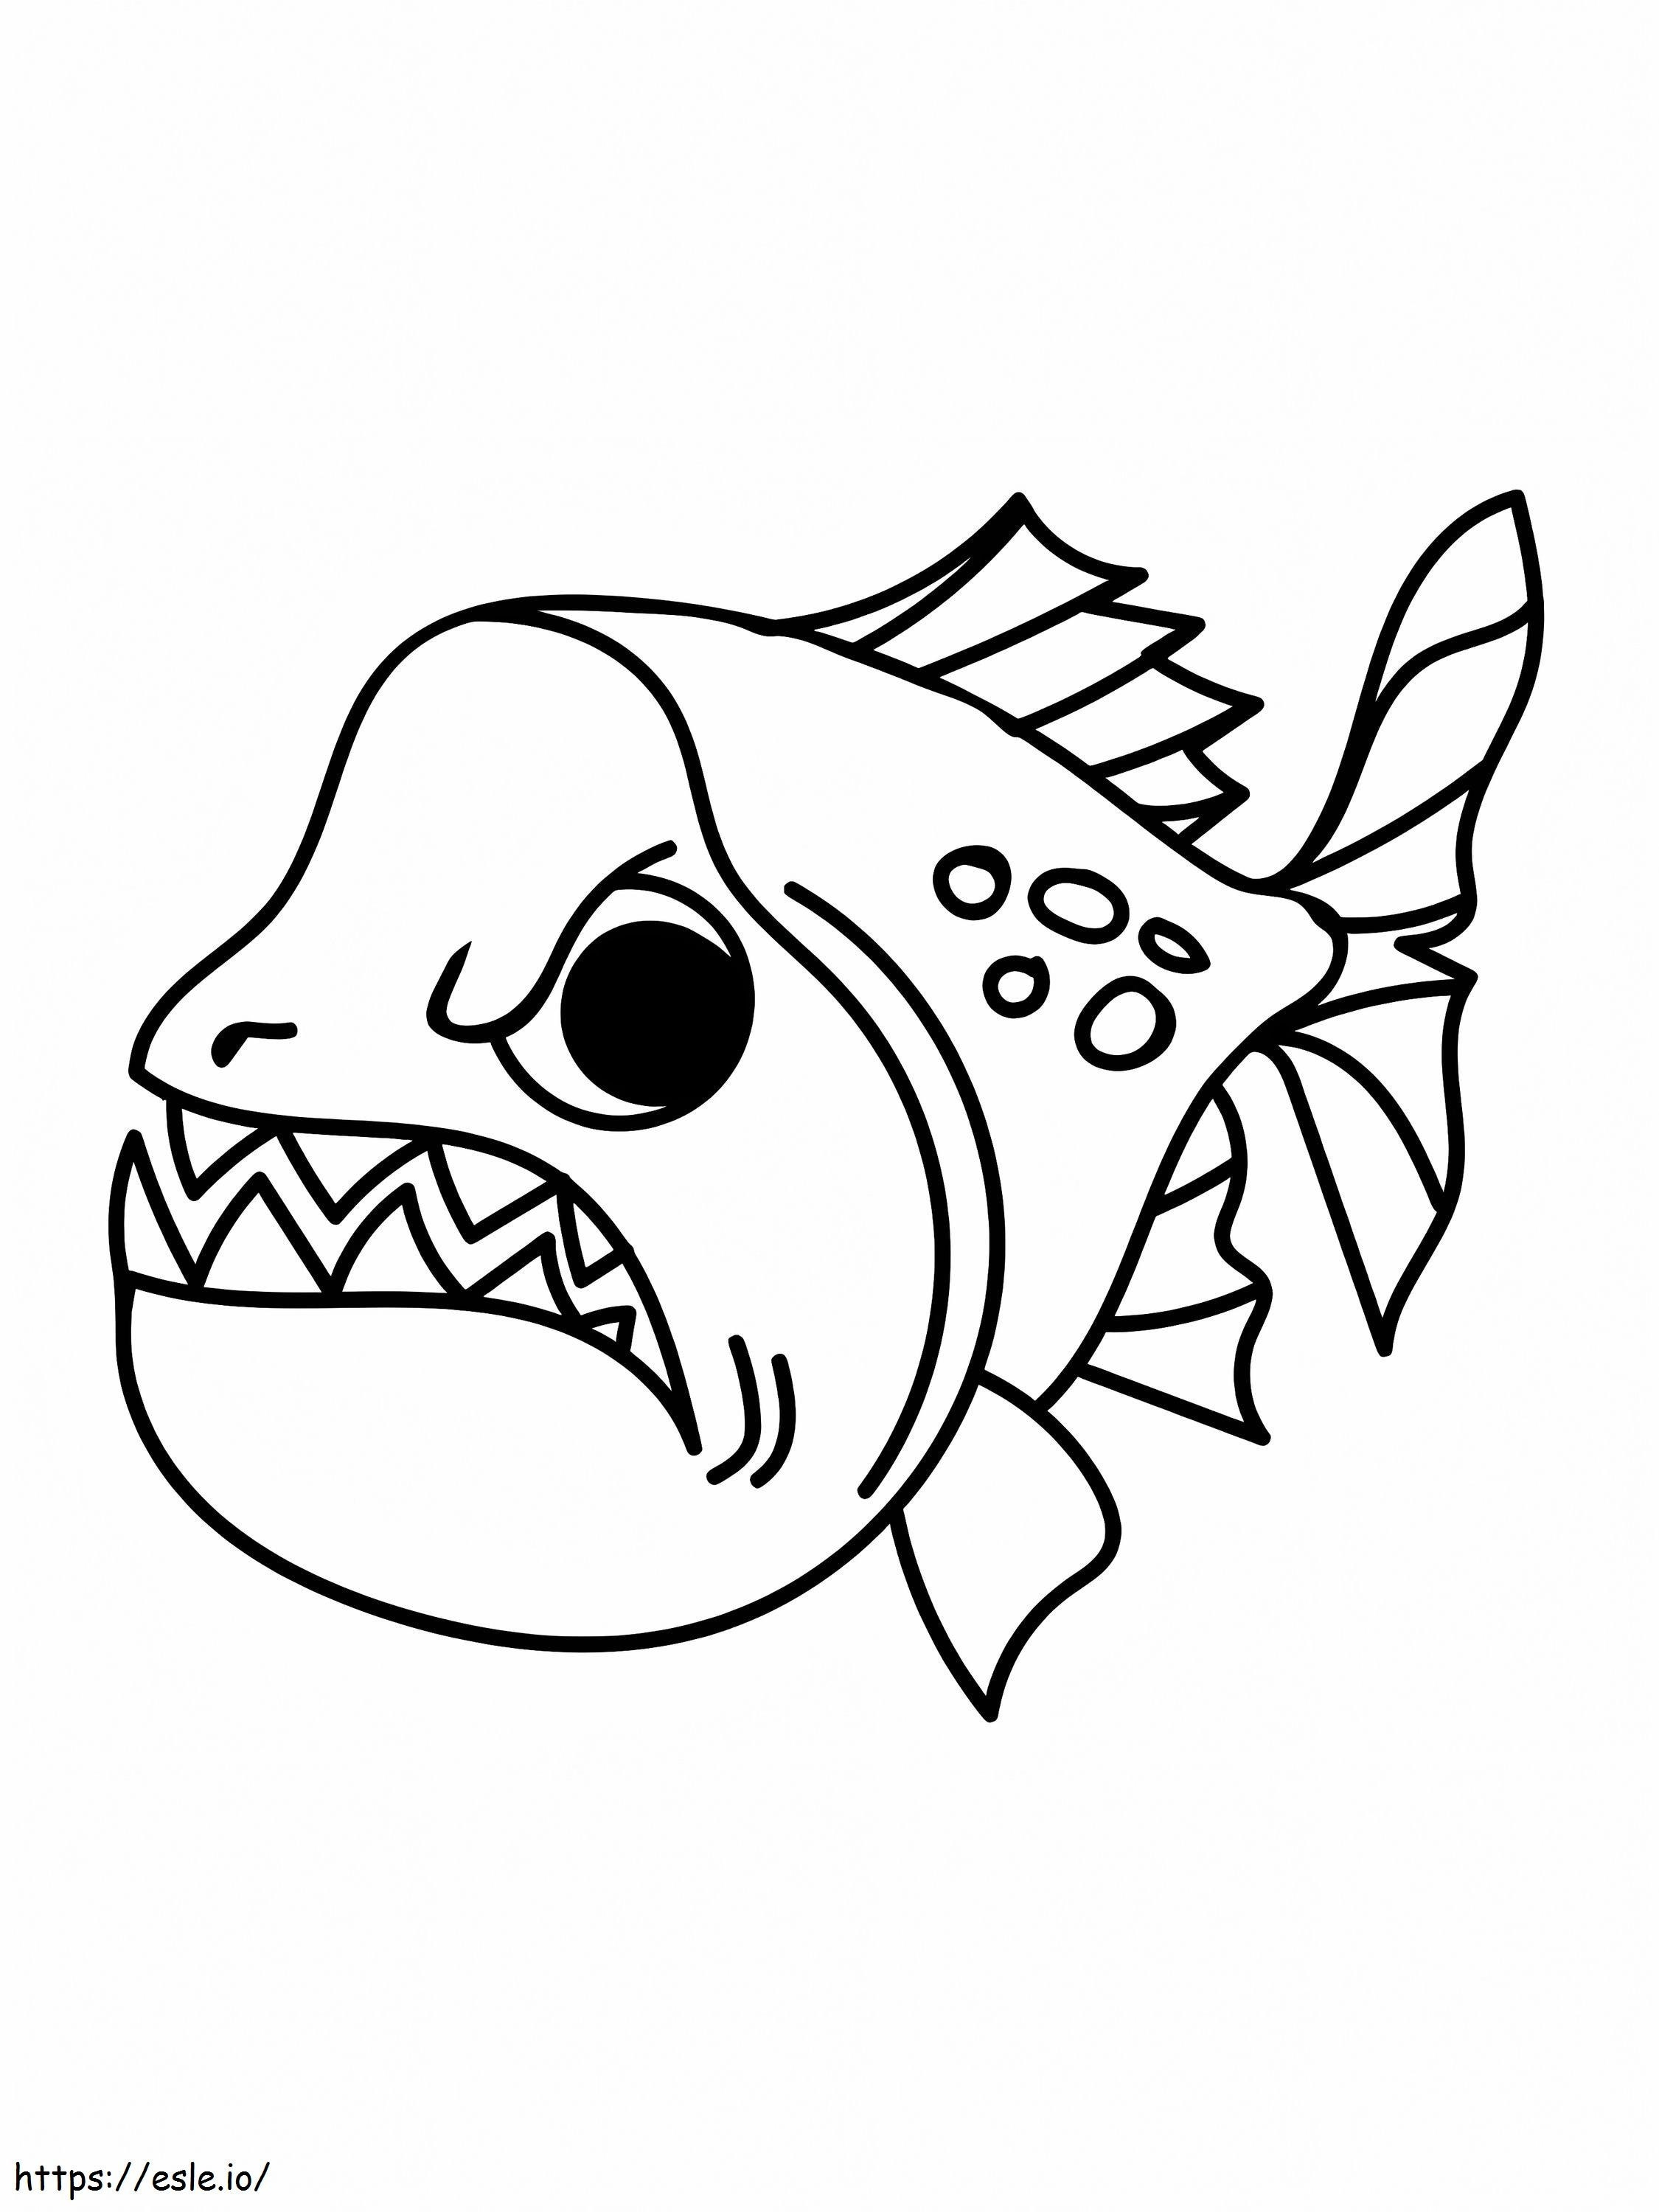 Kızgın Piranha Balığı boyama